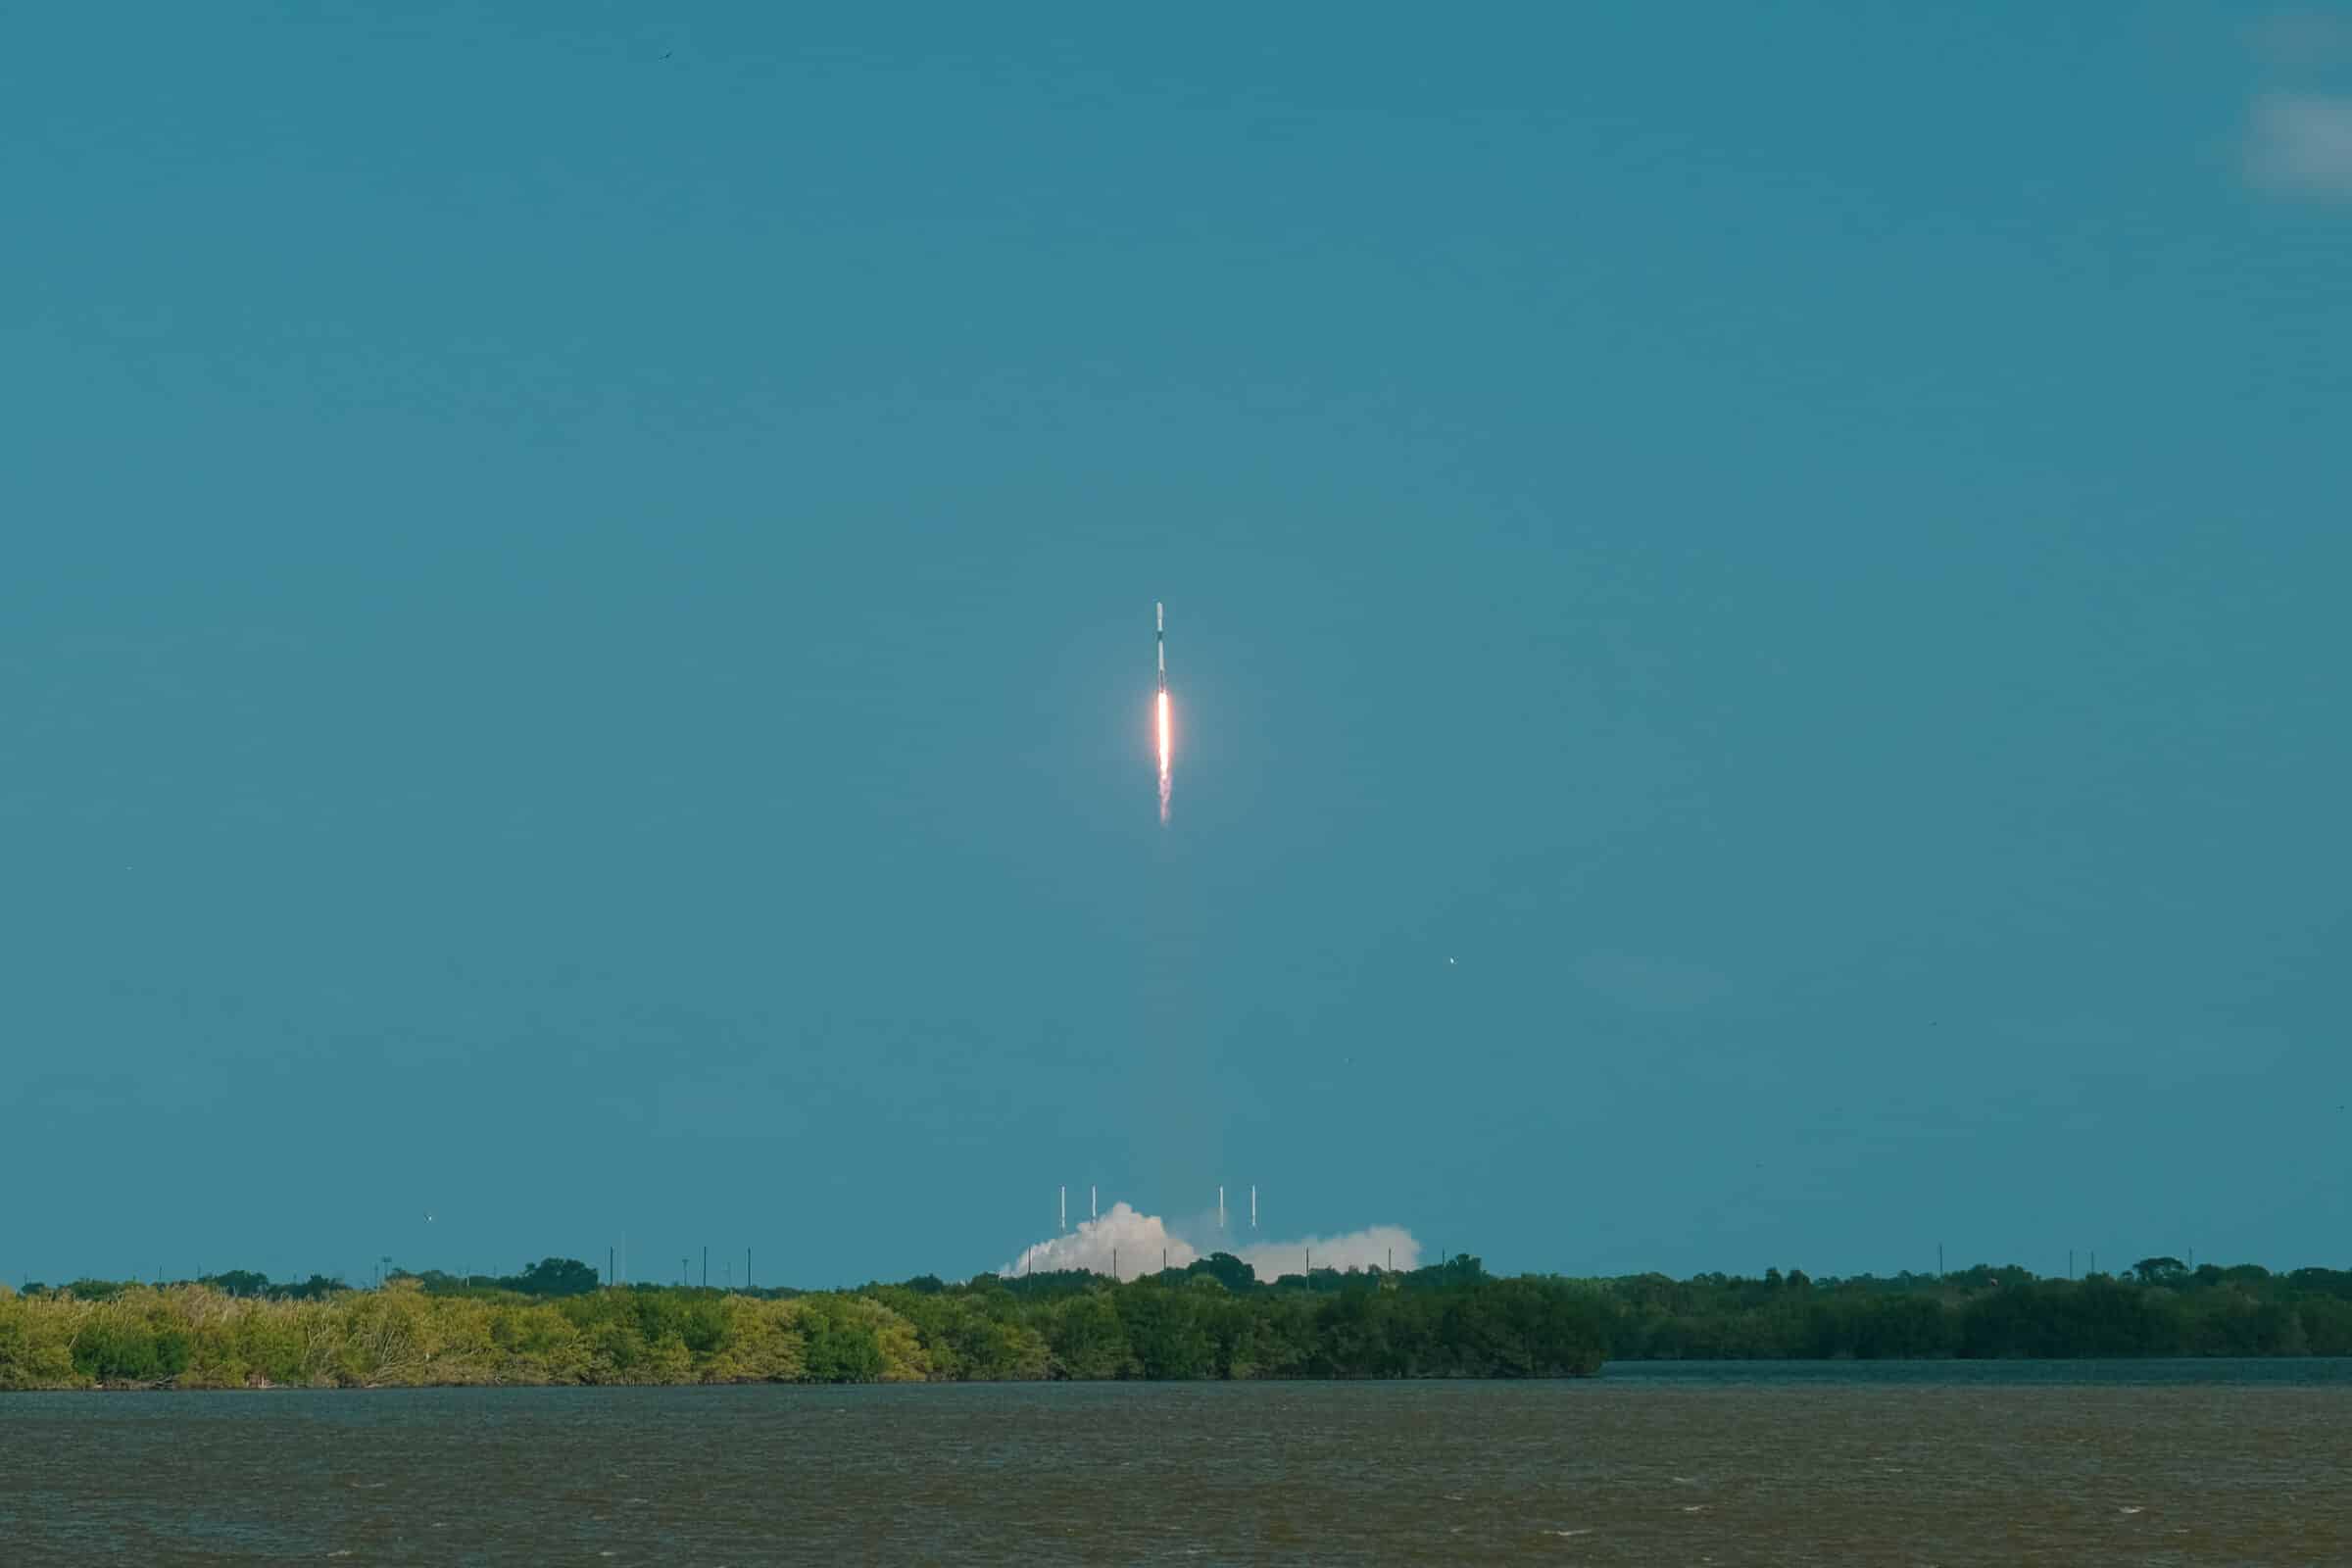 Pas na 20 seconden horen we het bulderende geluid van de gelanceerde SpaceX raket